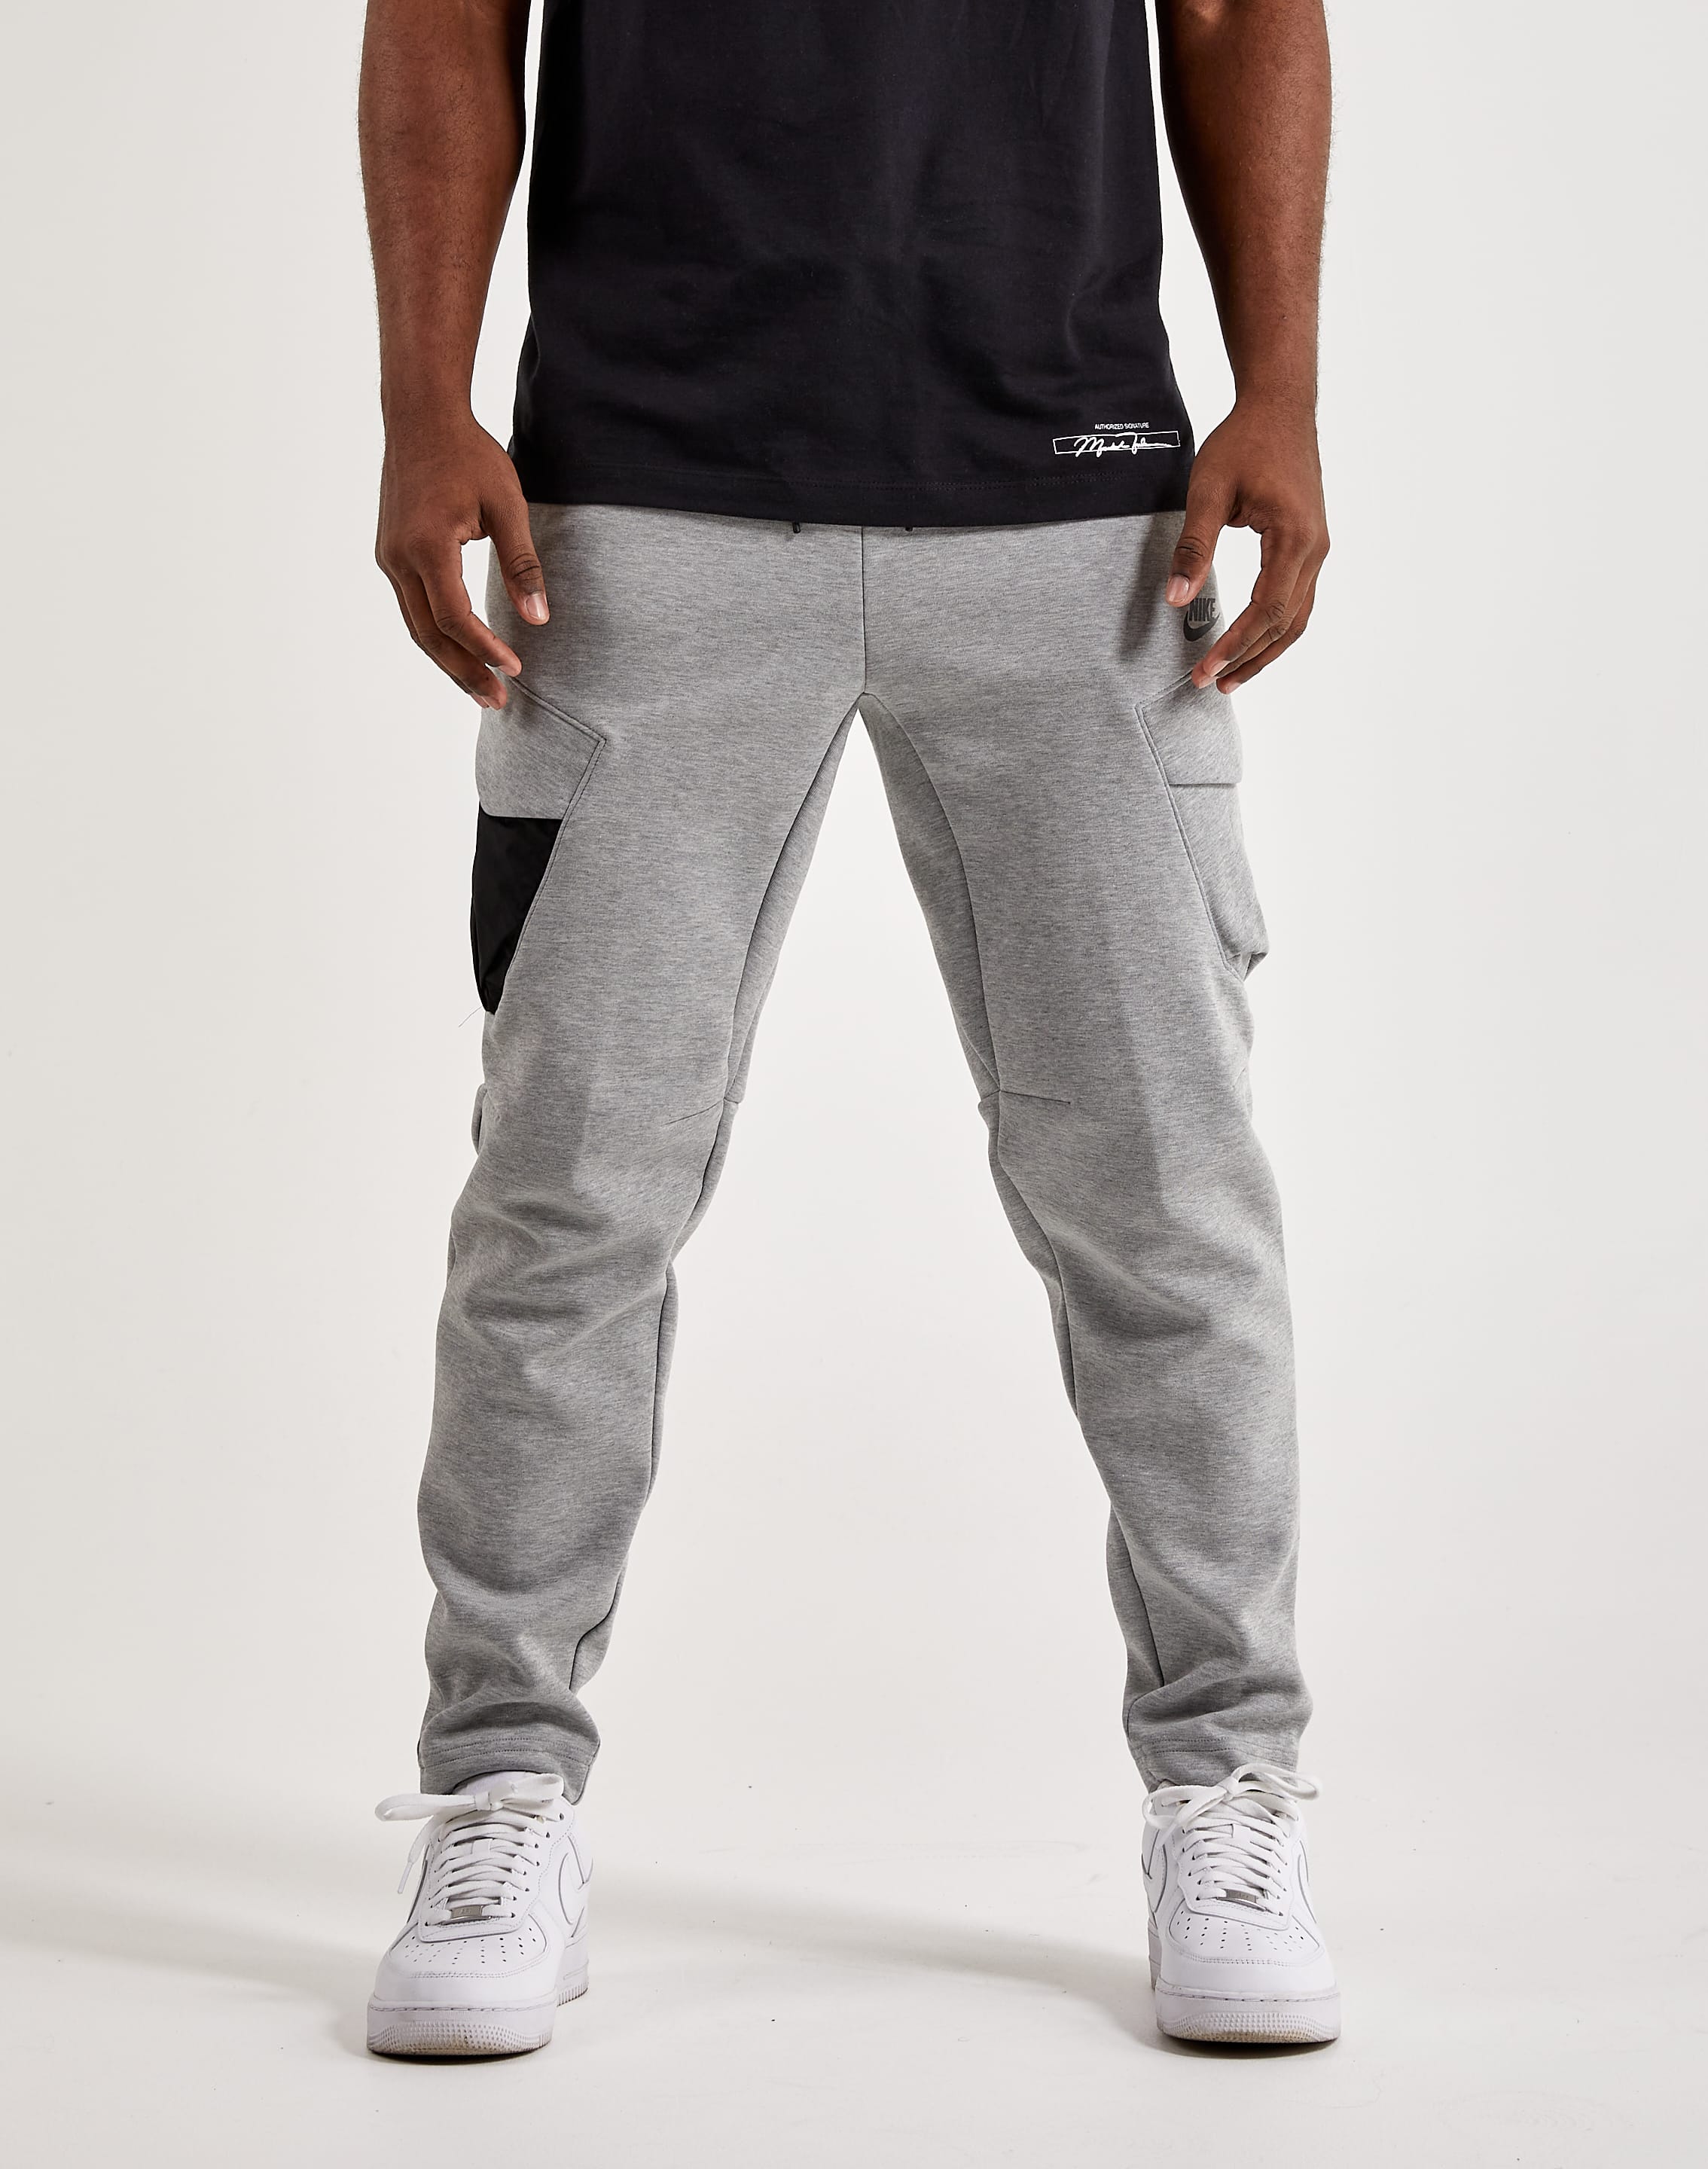  Nike Sportswear Men's Tech Fleece Utility Pants, Medium :  Clothing, Shoes & Jewelry